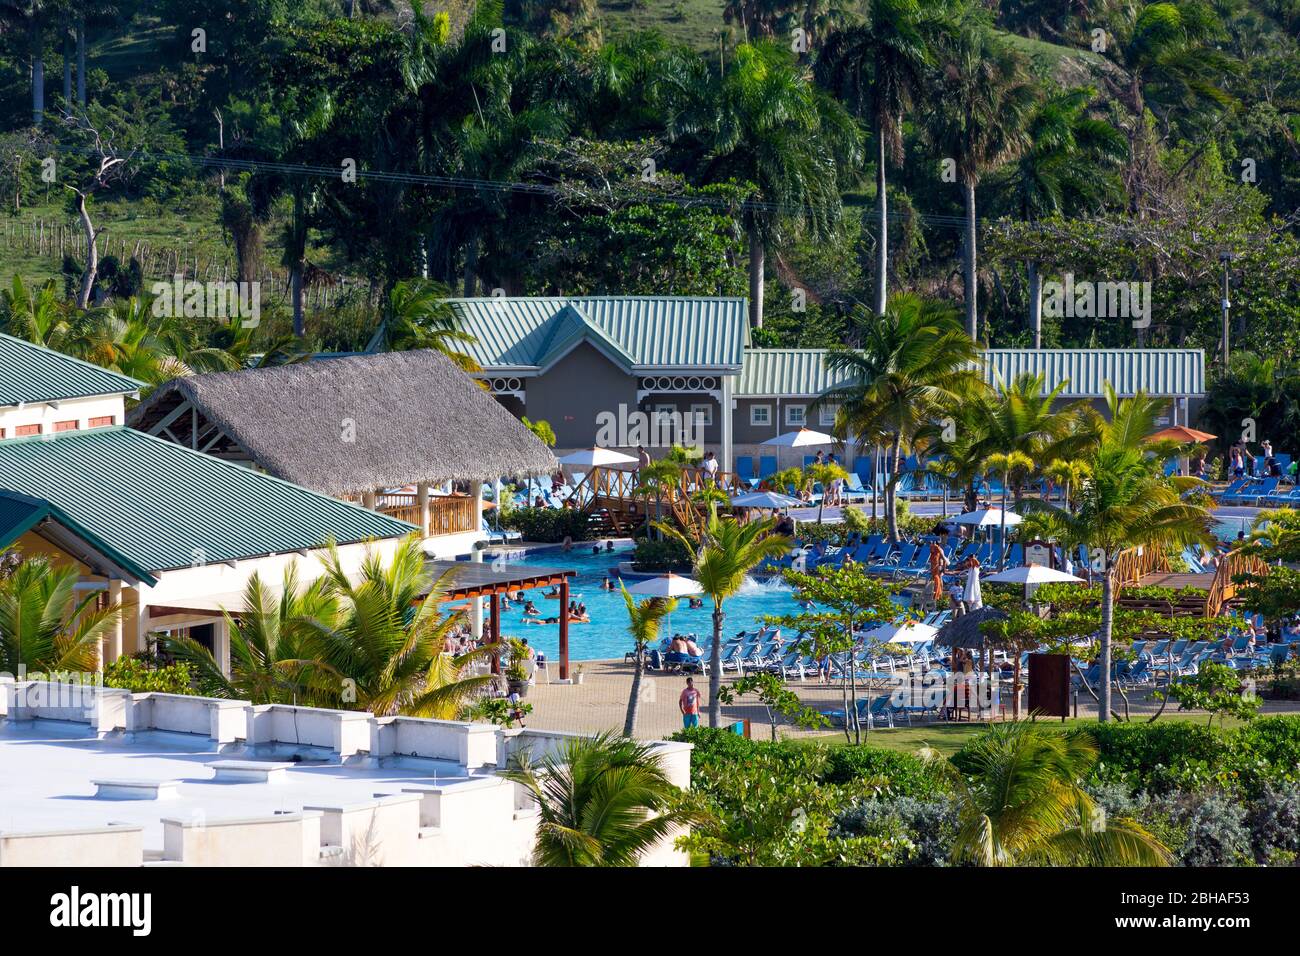 Restaurant mit Poolbereich, Aussicht vom Kreuzfahrtschiff, Touristenzentrum, Amber Cove Cruise Terminal, Hafen, Maimón, Dominikanische Republik, Große Stock Photo